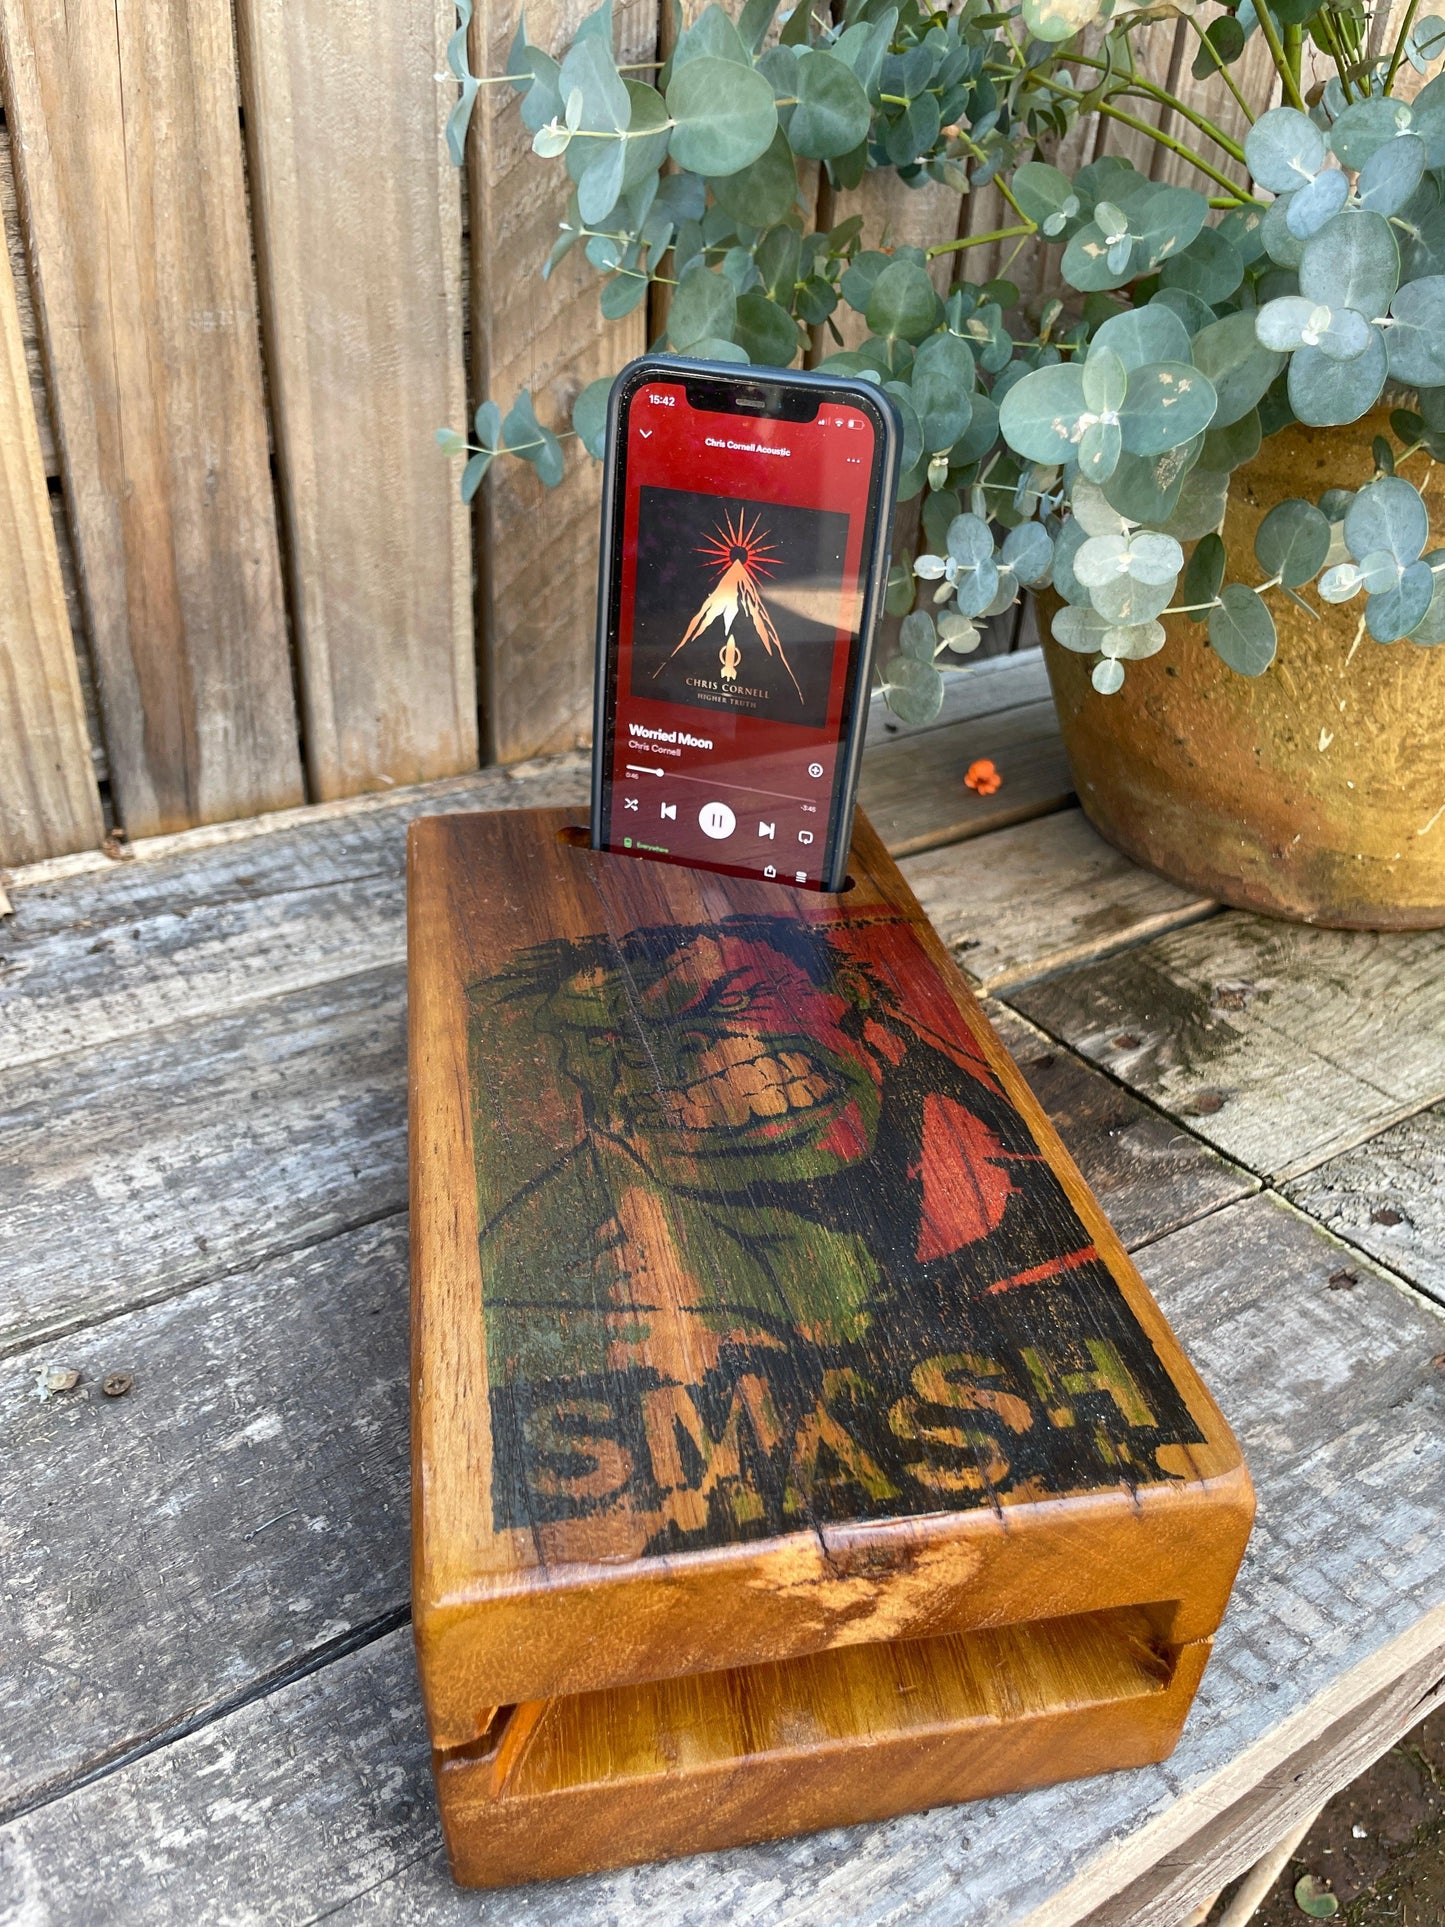 Hulk Smash Acoustic Speaker for smart phones - MooBoo Home